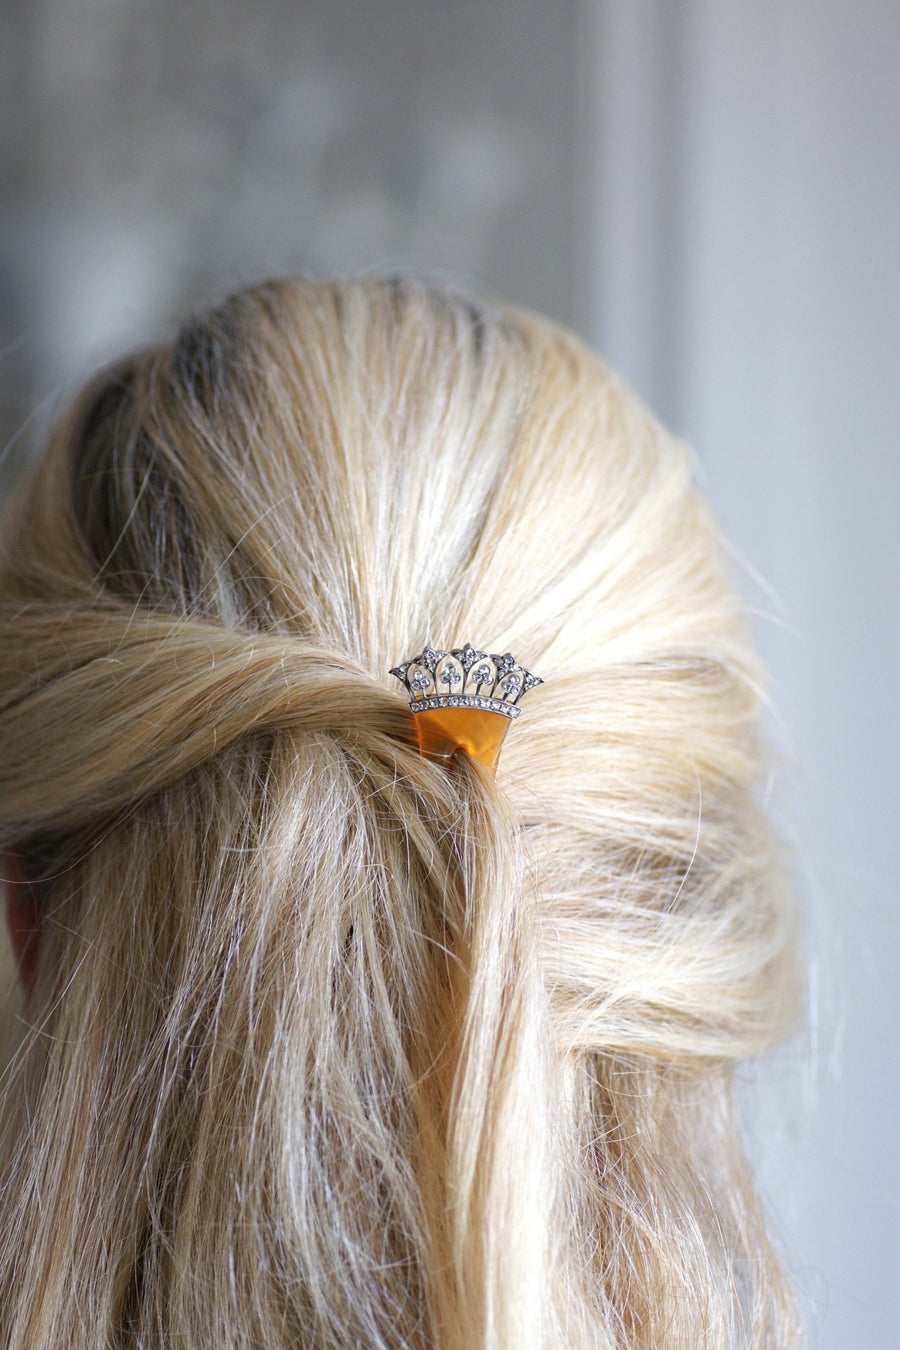 Peigne, épingle à cheveux de mariage, en diamants, or et argent sur corne - Galerie Pénélope